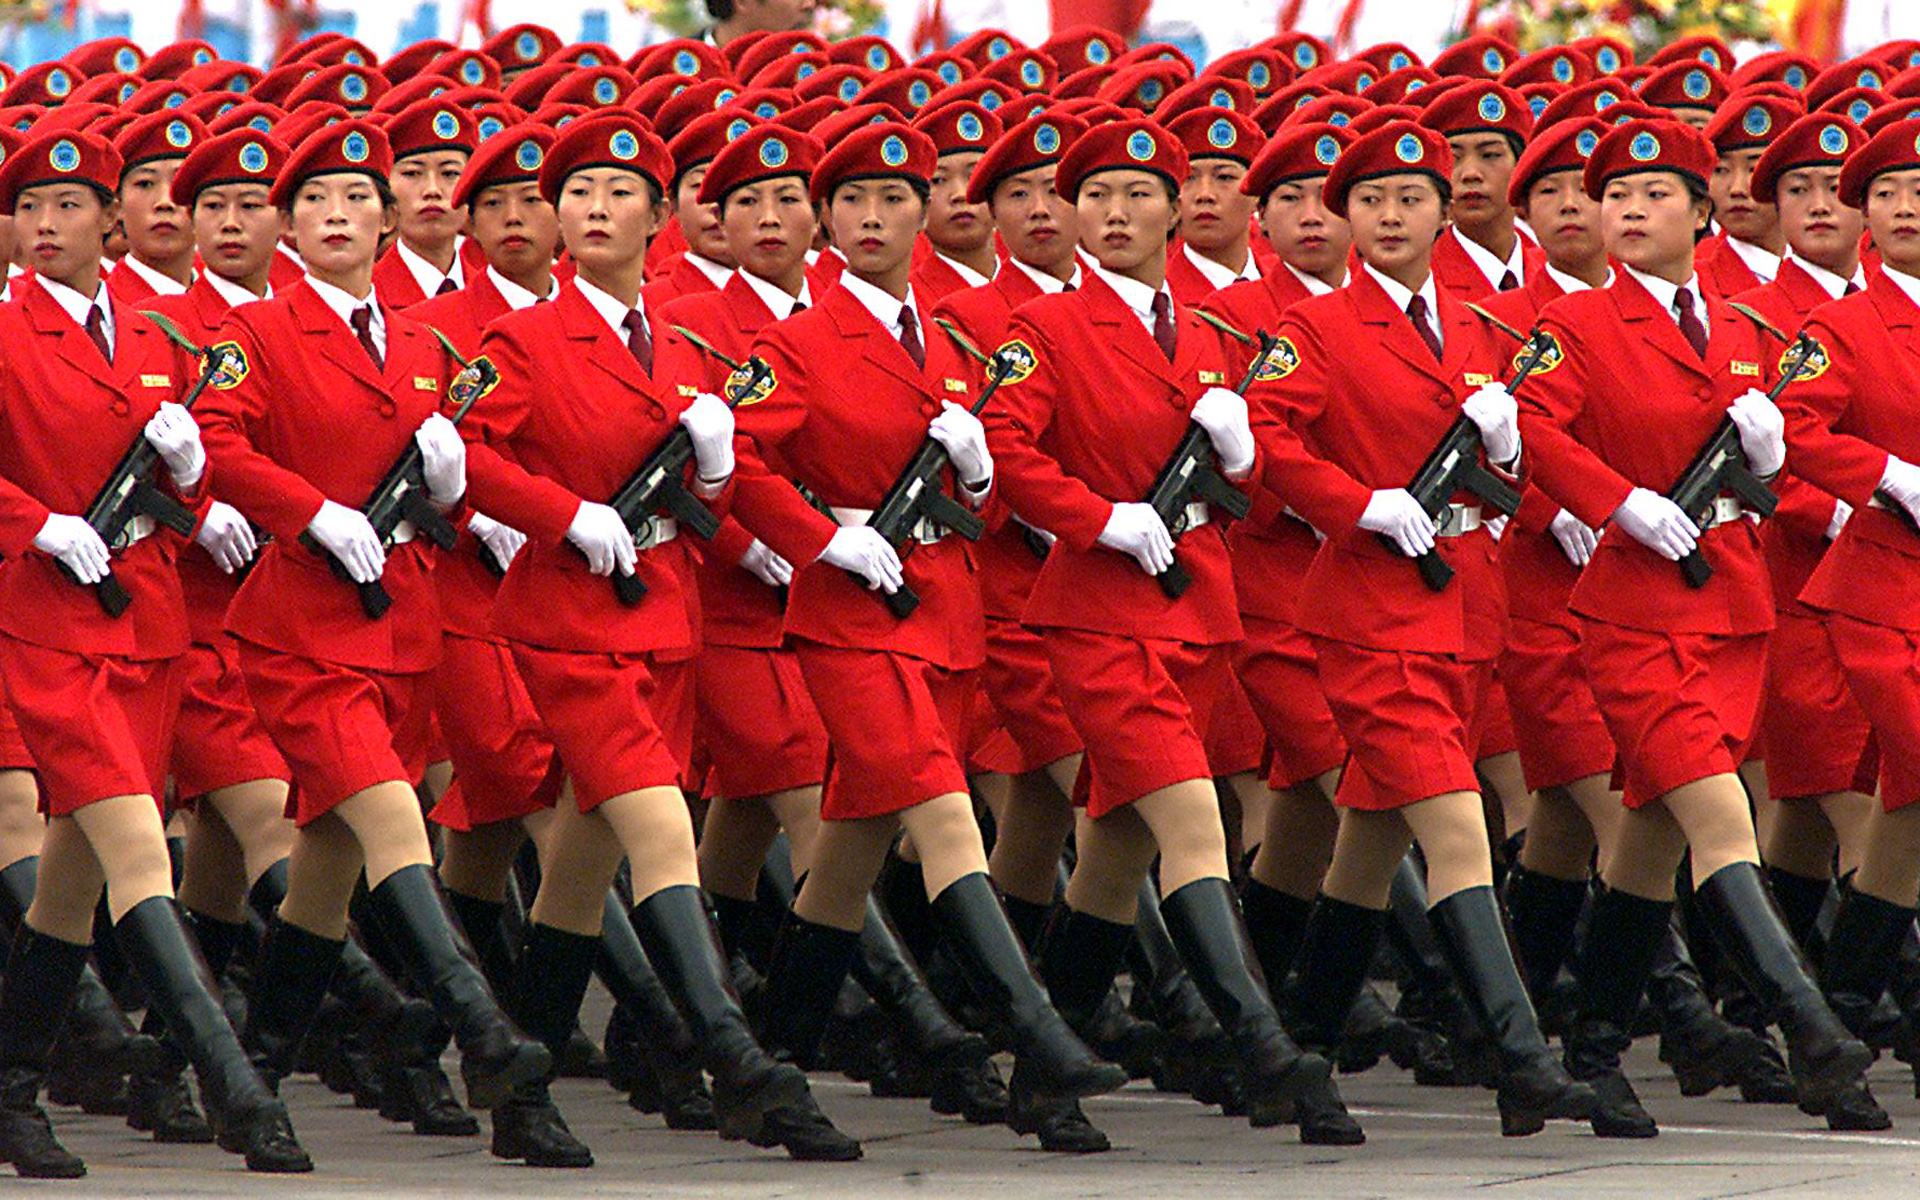 哪个国家的女兵在阅兵时更英姿飒爽?